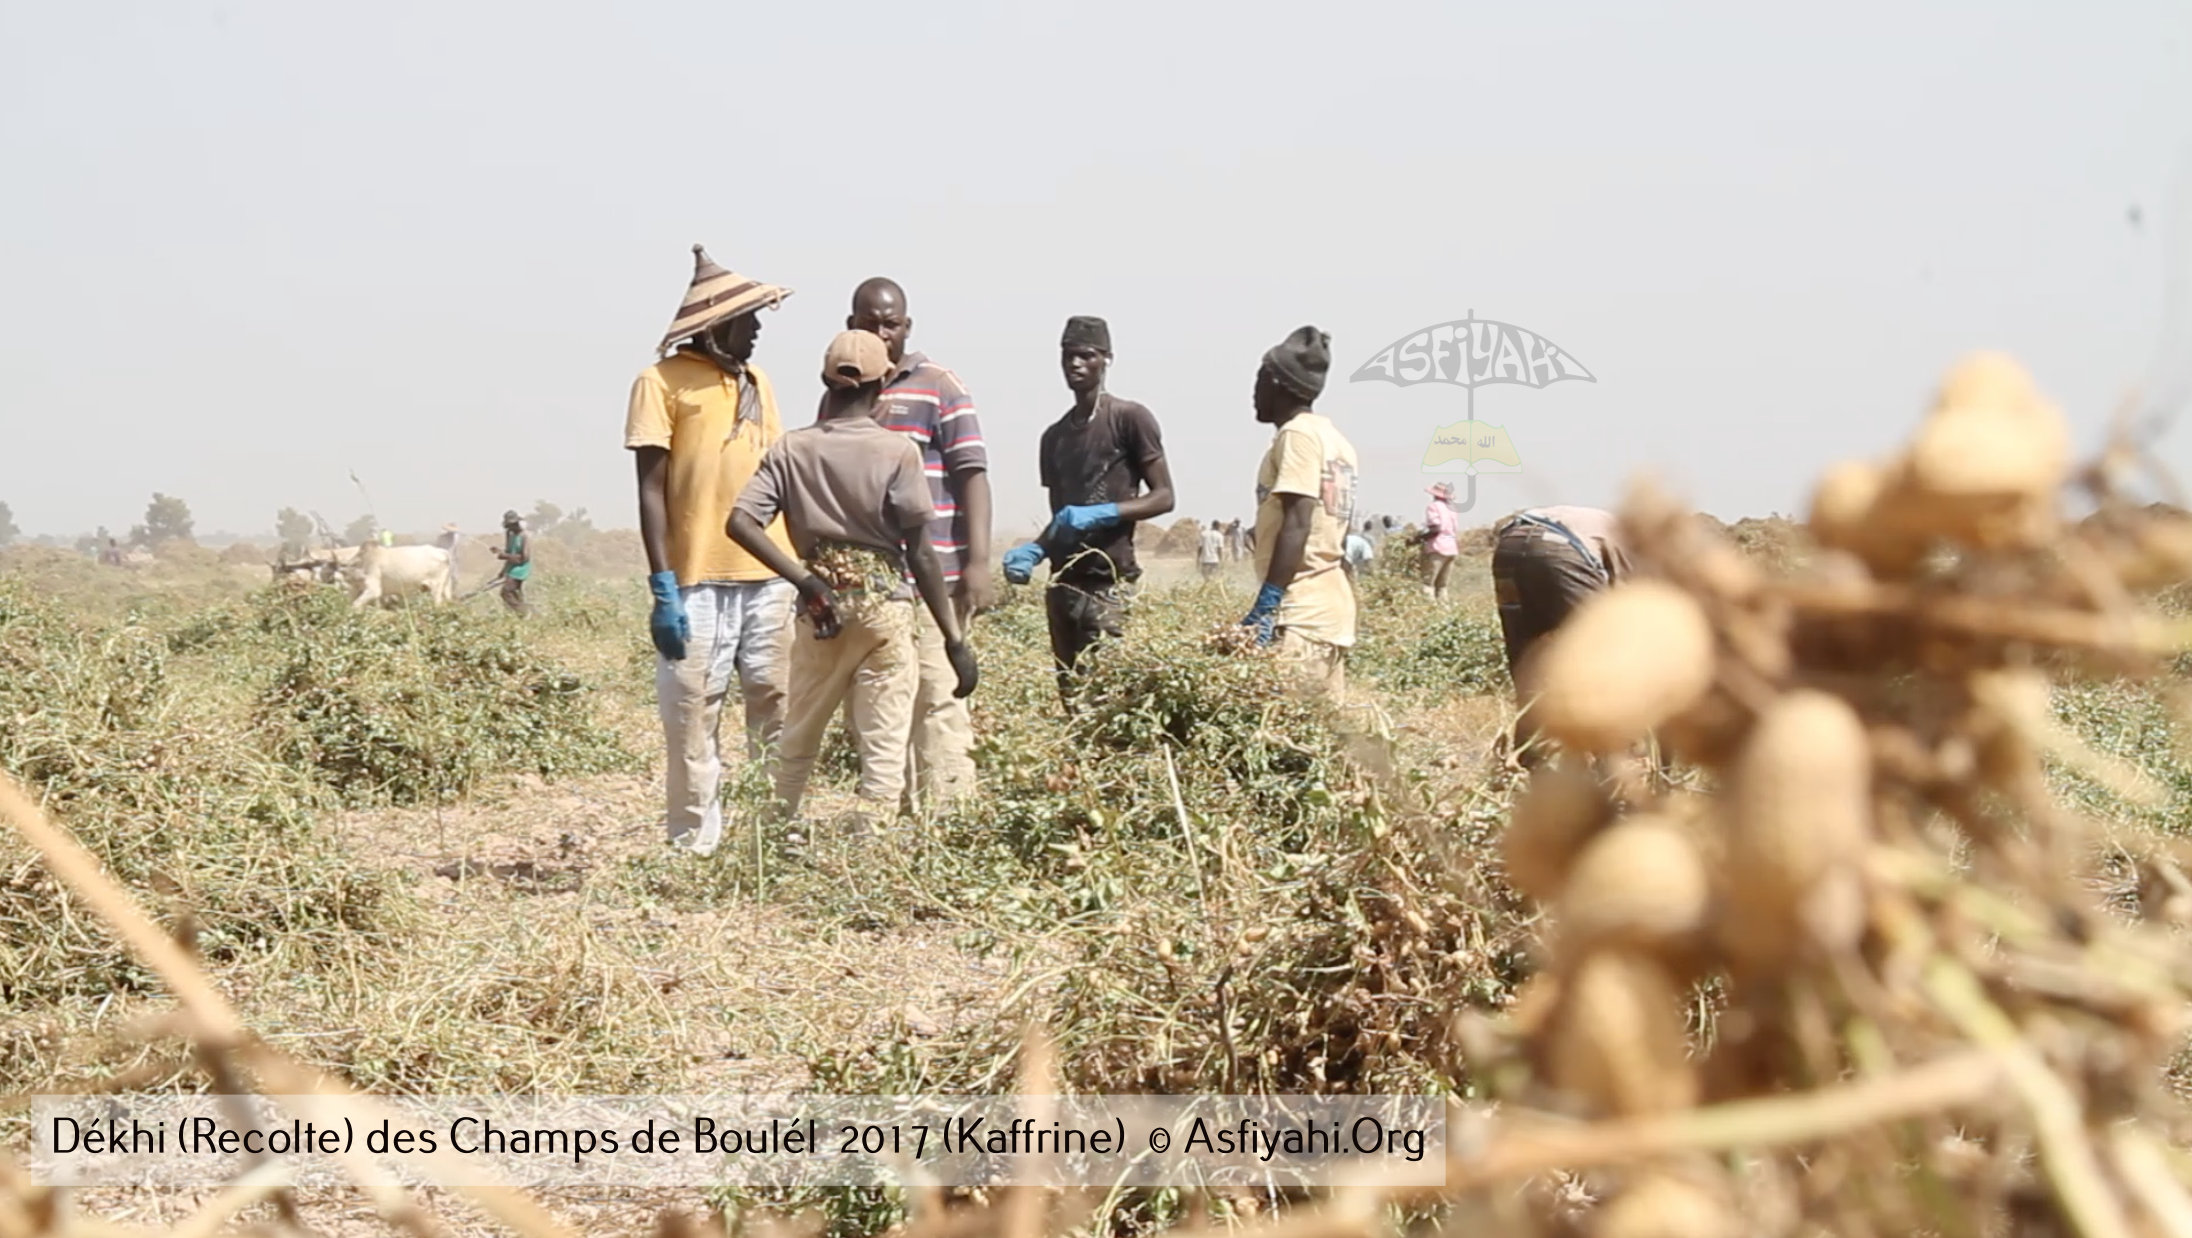 PHOTOS - Regardez les Images de la Récolte 2017 des Champs de Boulél (Kaffrine), cultivés par Serigne Abdoul Aziz SY Al Amine